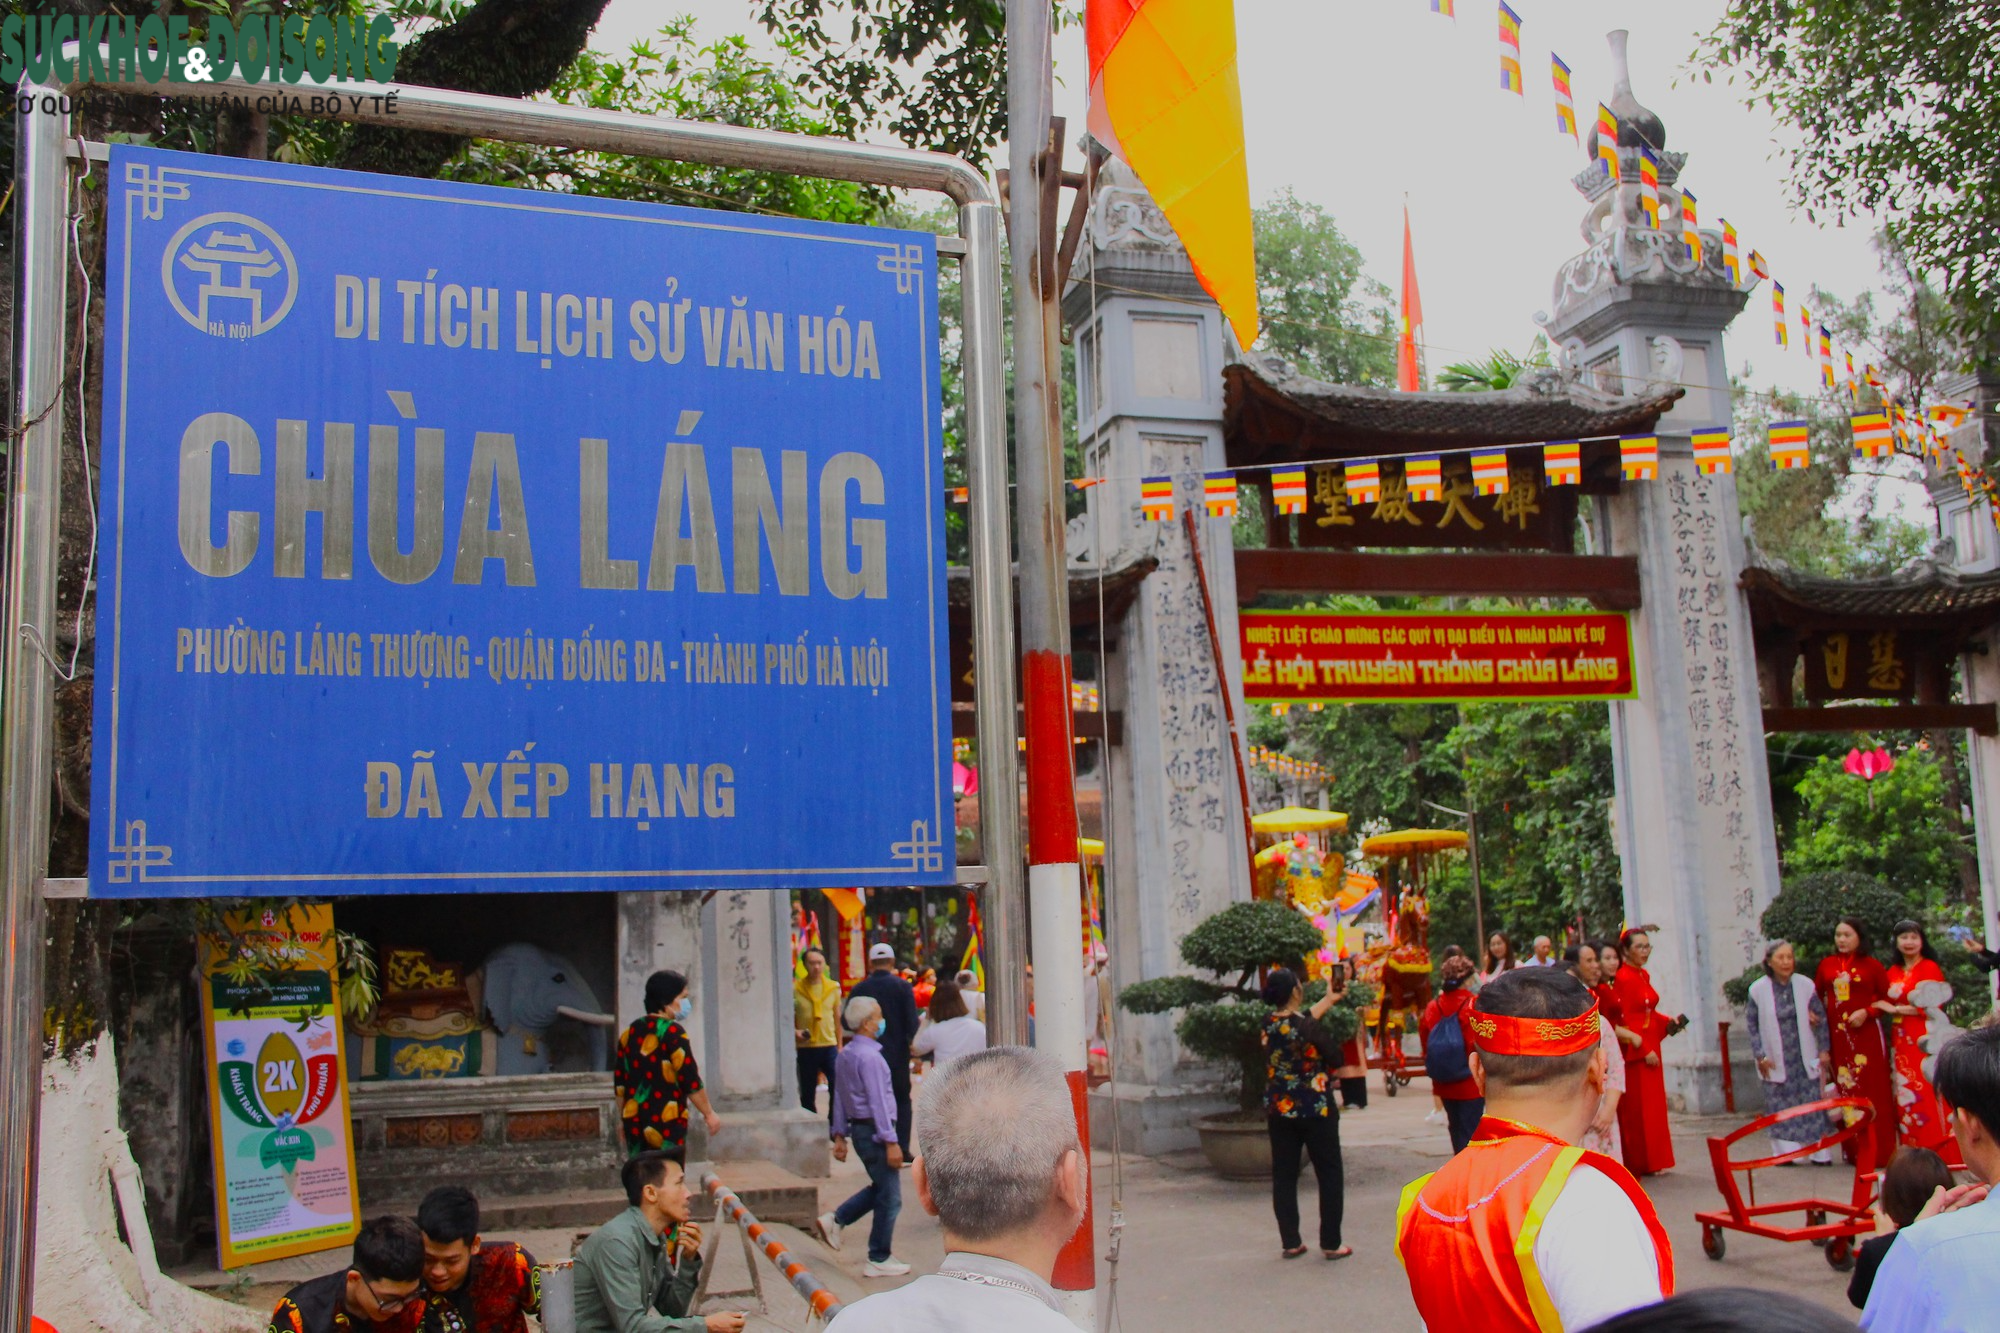 Chùa Láng - ngôi chùa nổi tiếng với lịch sử lâu đời và những lễ hội truyền thống mang ý nghĩa sâu sắc và nét độc đáo riêng biệt.